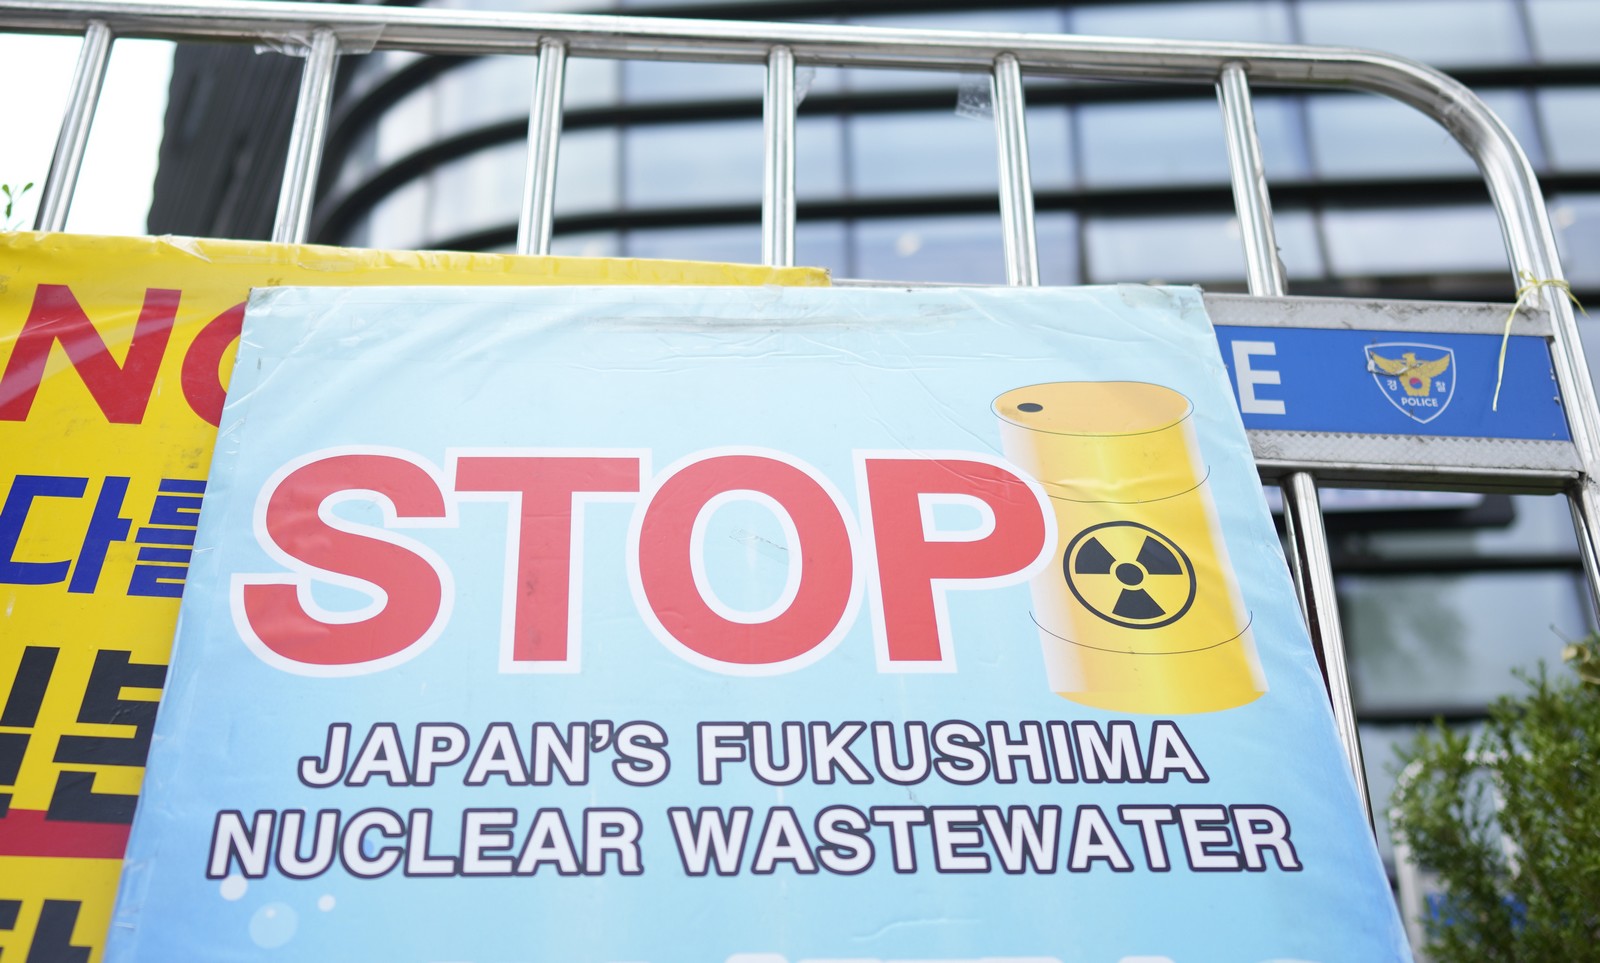 Ιαπωνία: Ξεκίνησε η αμφιλεγόμενη ρίψη υδάτων από το πυρηνικό εργοστάσιο της Φουκουσίμα στον Ειρηνικό